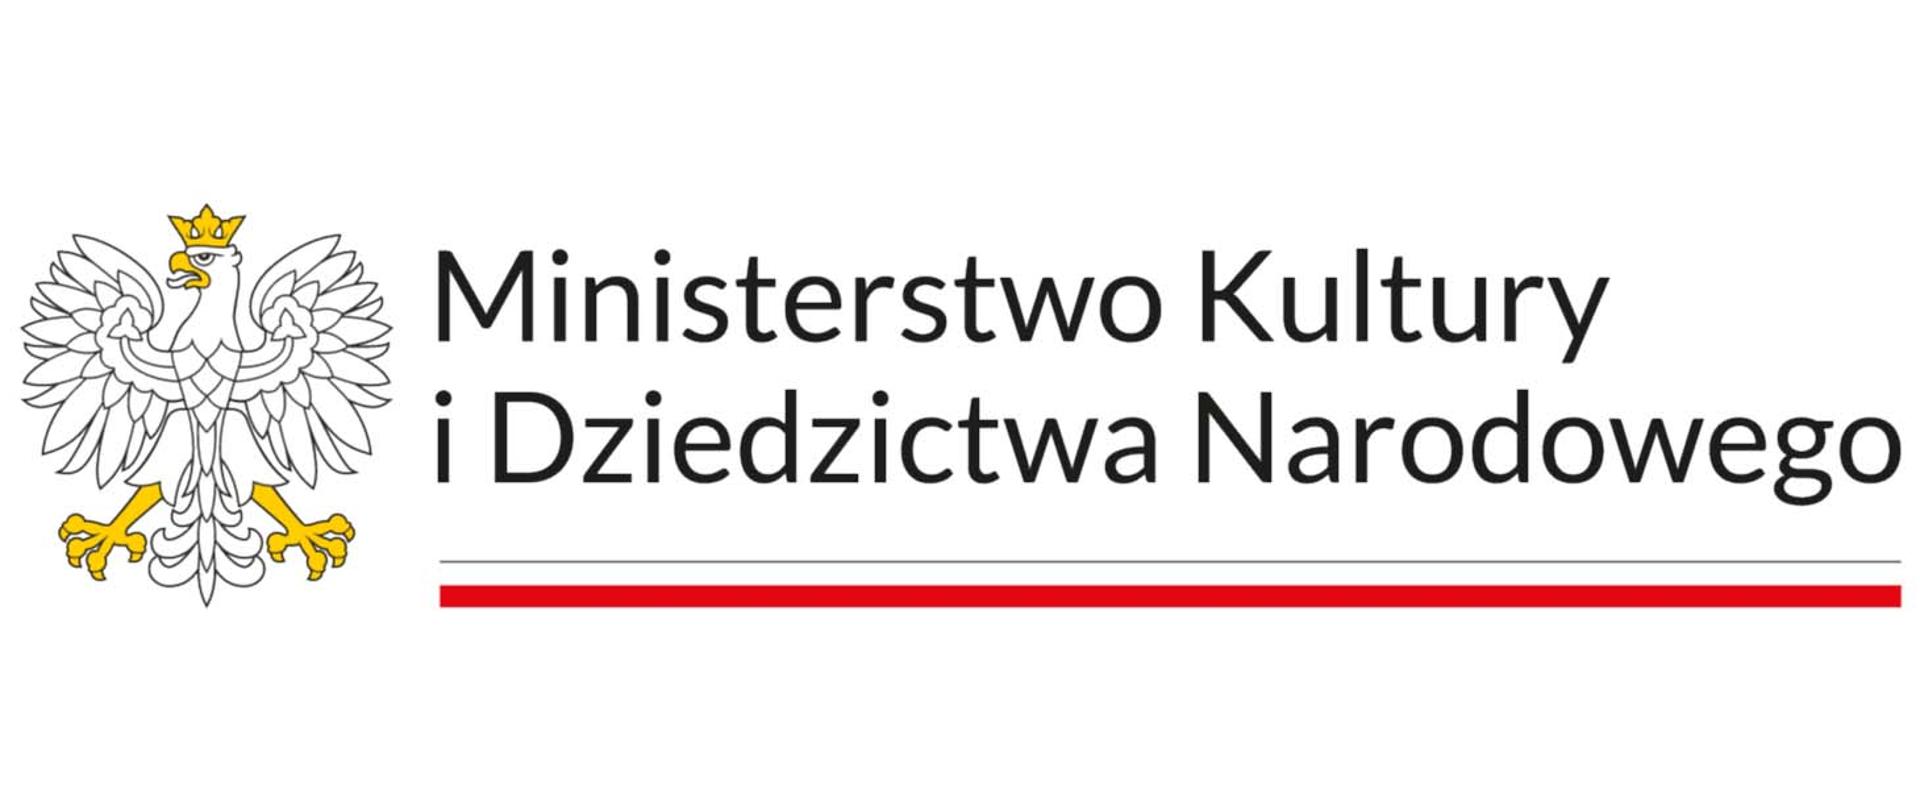 Logo Ministerstwa Kultury i Dziedzictwa Narodowego z wizerunkiem orła ustalonego dla godła Rzeczypospolitej Polskiej oraz barw Rzeczypospolitej Polskiej. W znaku zawarta jest również nazwa Ministerstwa Kultury i Dziedzictwa Narodowego.